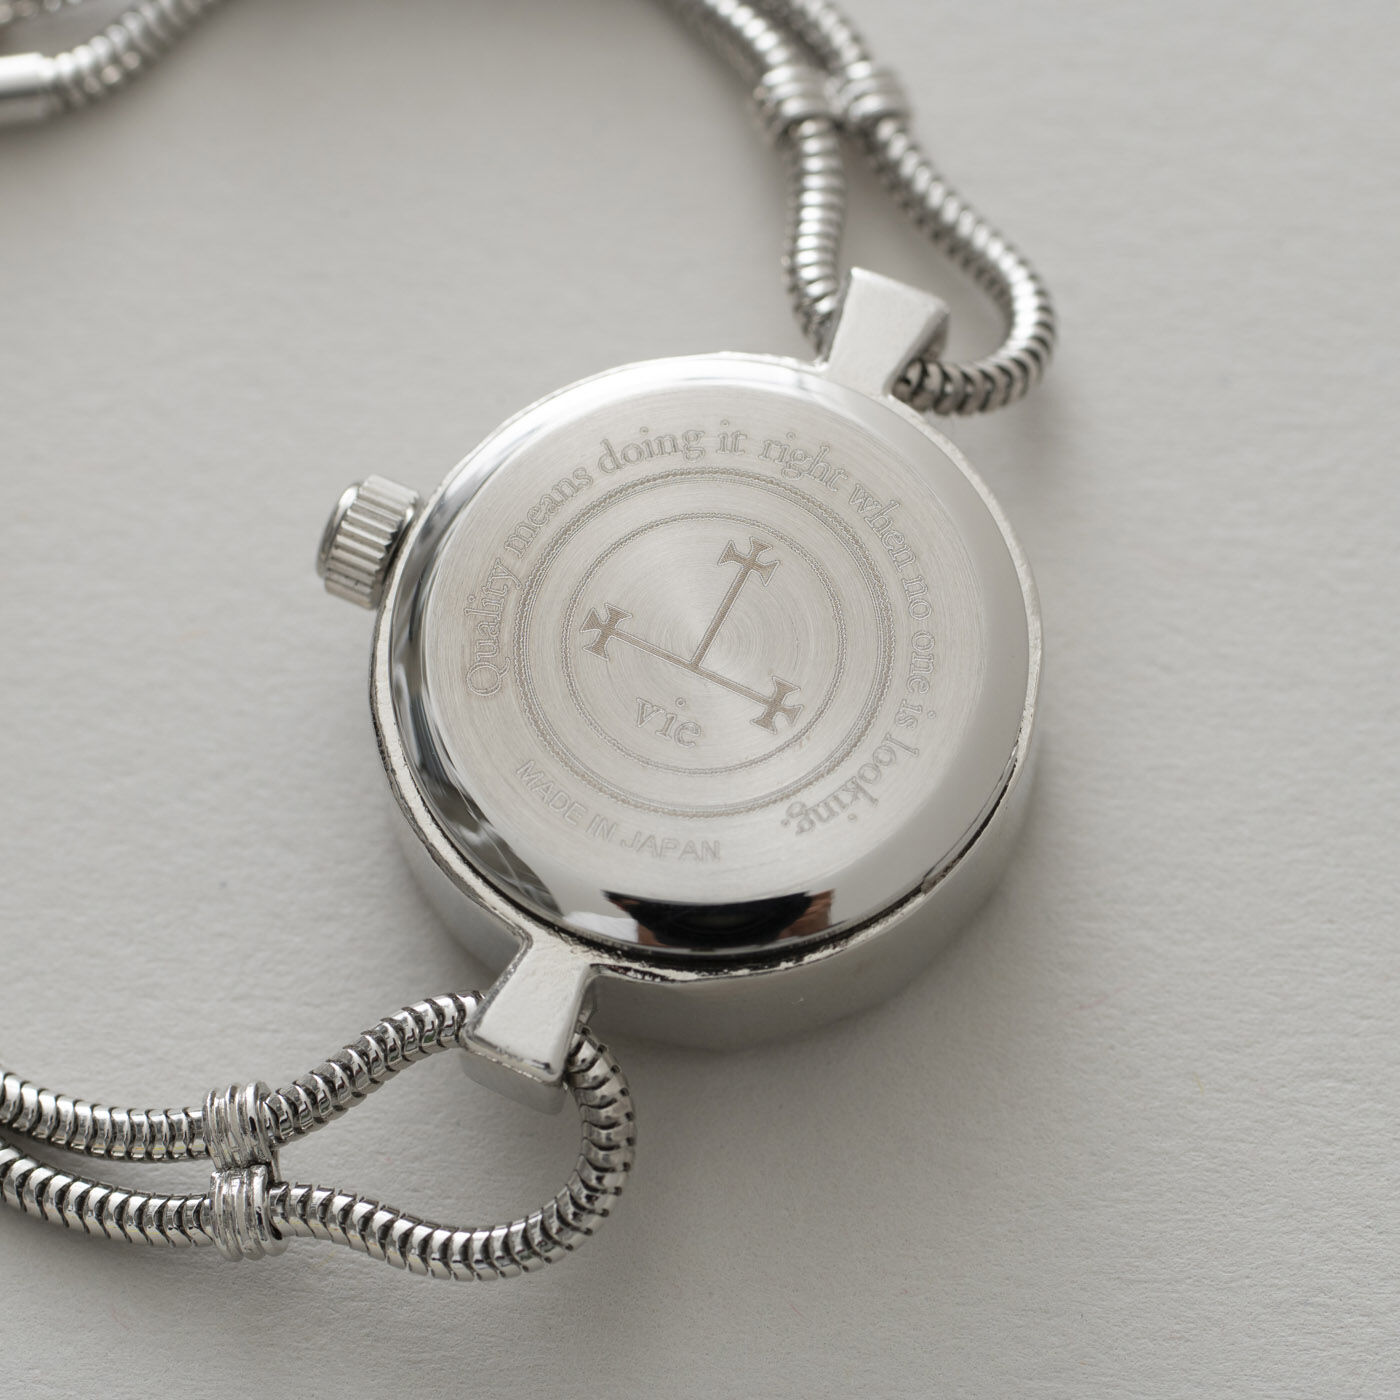 ＆Stories|滋賀の時計職人とヴィンテージショップオーナーが作った　ドレスウォッチ〈シルバー色〉|裏面には、モノづくりにまつわるヘンリー・フォードの名言をレーザー刻印。